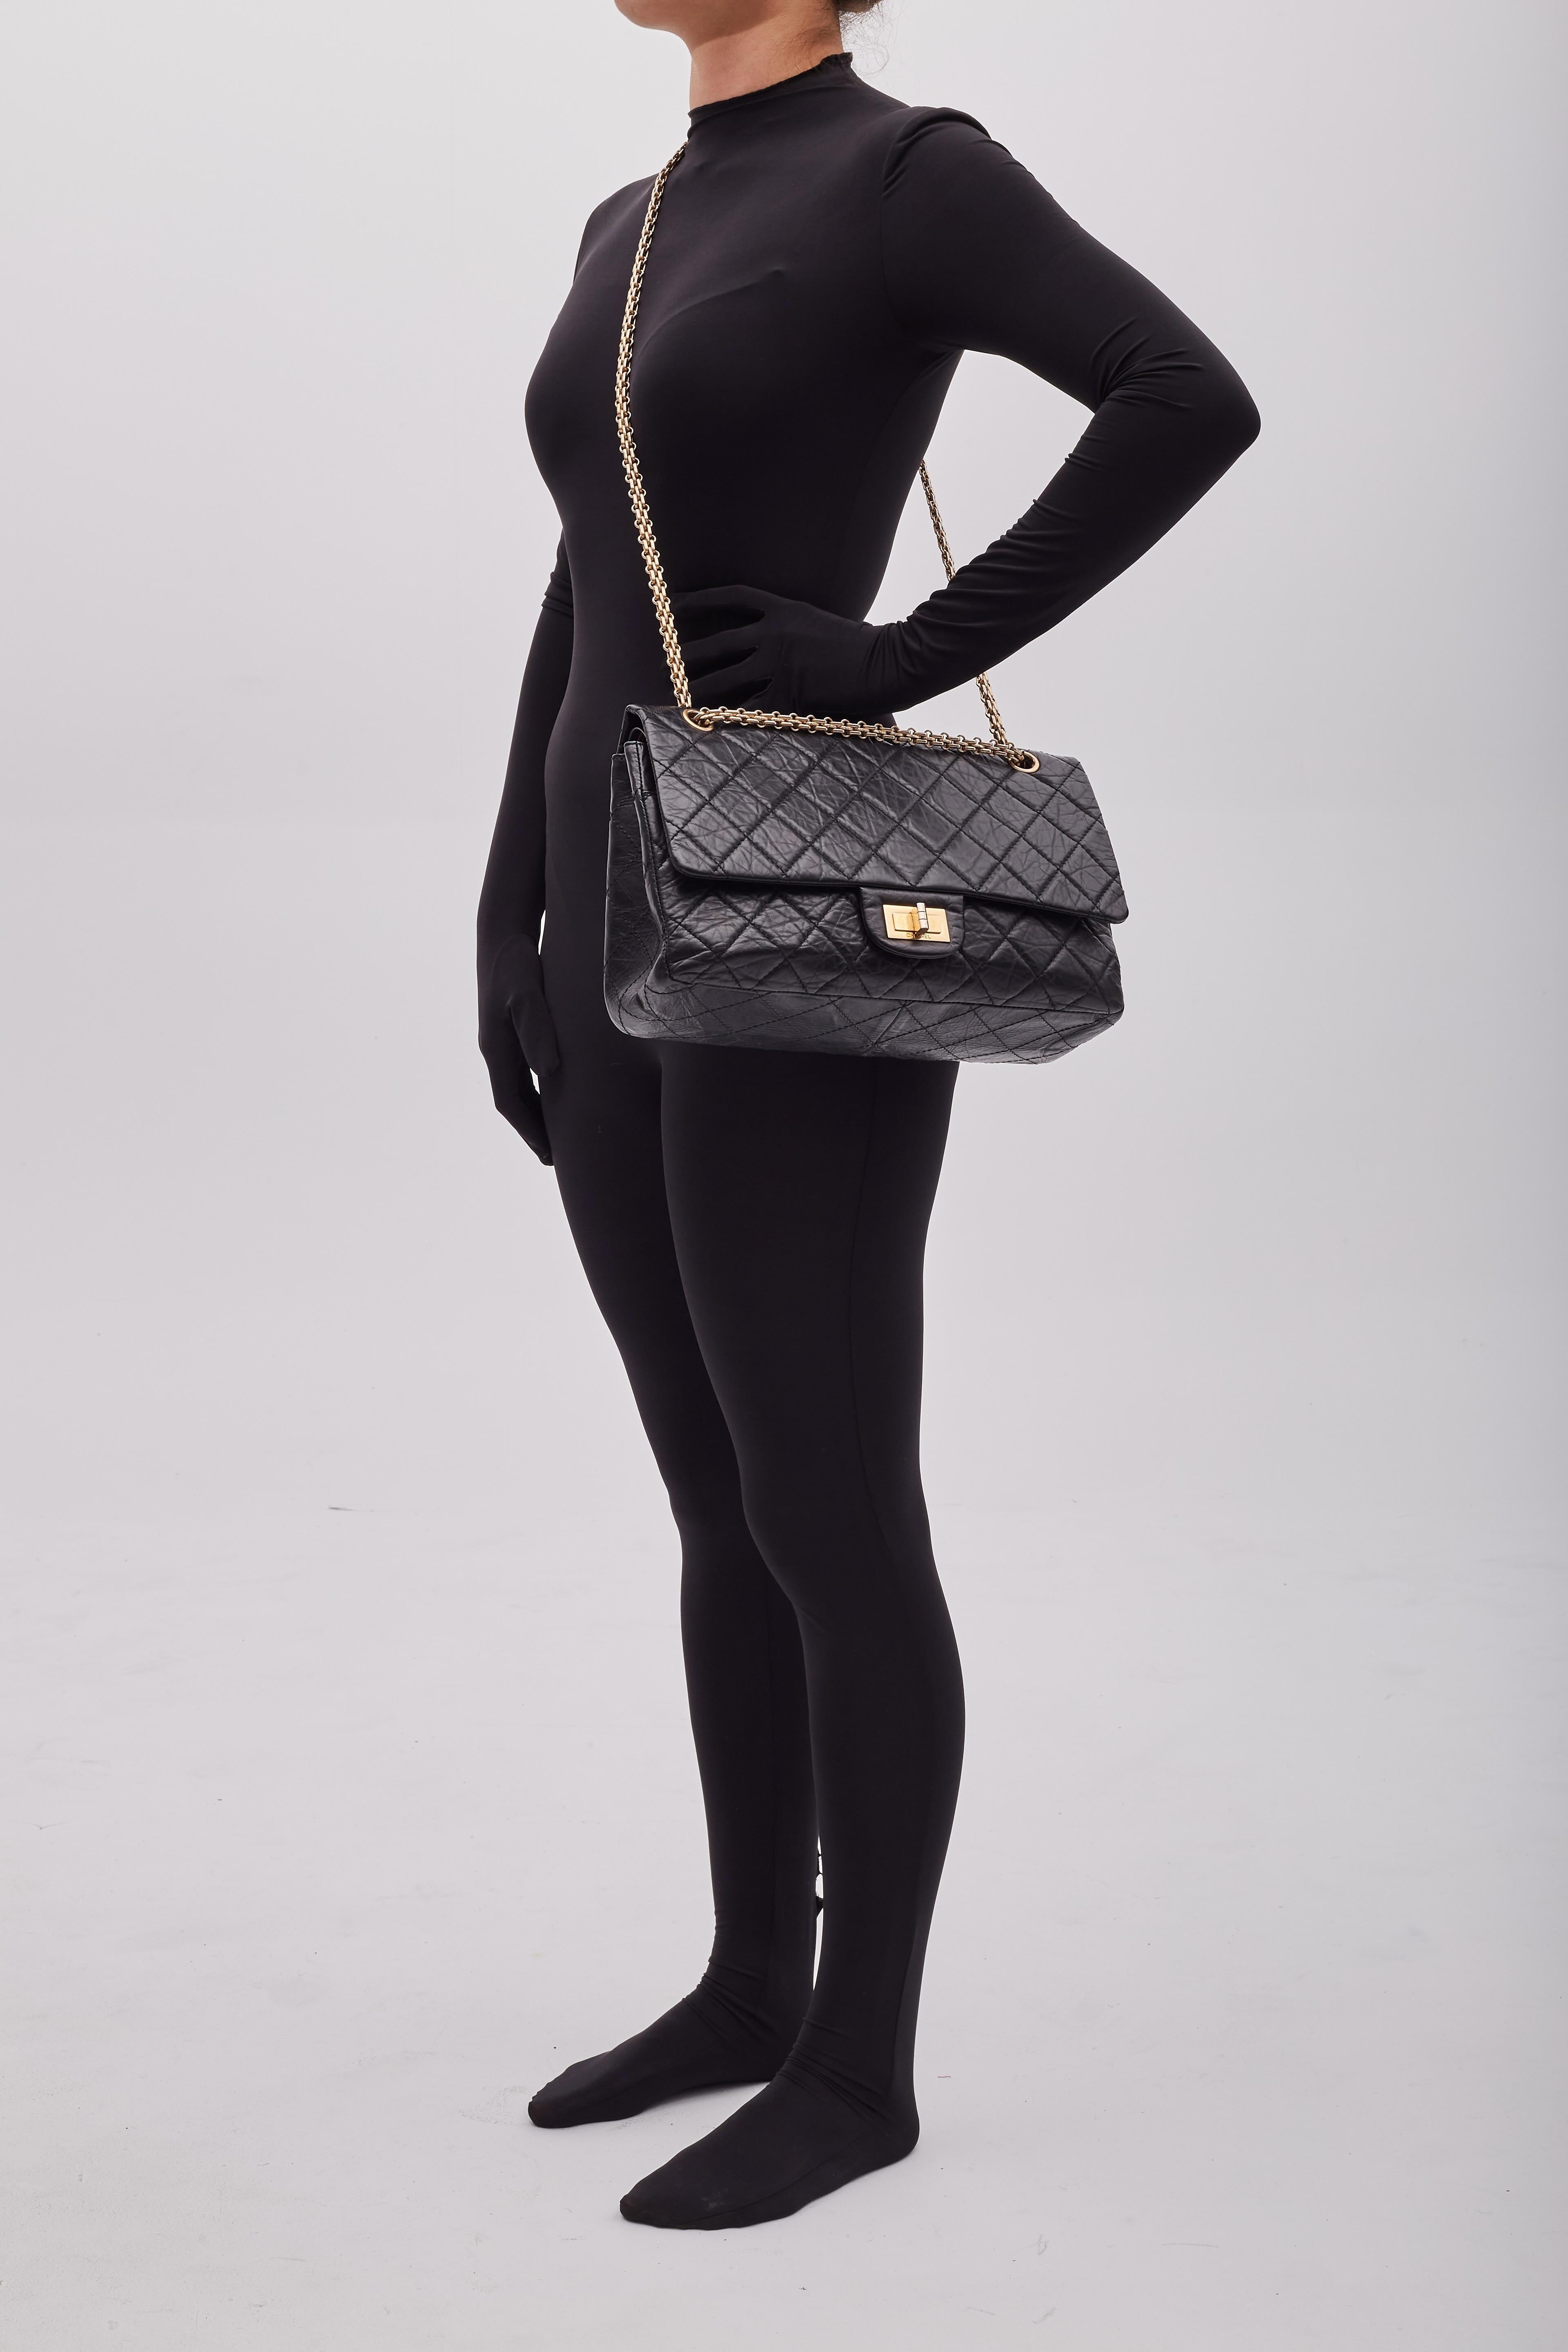 Voici le sac à rabat Chanel Reissue 2.55 227 dans la plus grande taille de ce modèle. Le sac est confectionné en cuir de veau vieilli matelassé de couleur noire avec des ferrures de tonalité dorée antiquaire. Le sac est doté d'une bandoulière